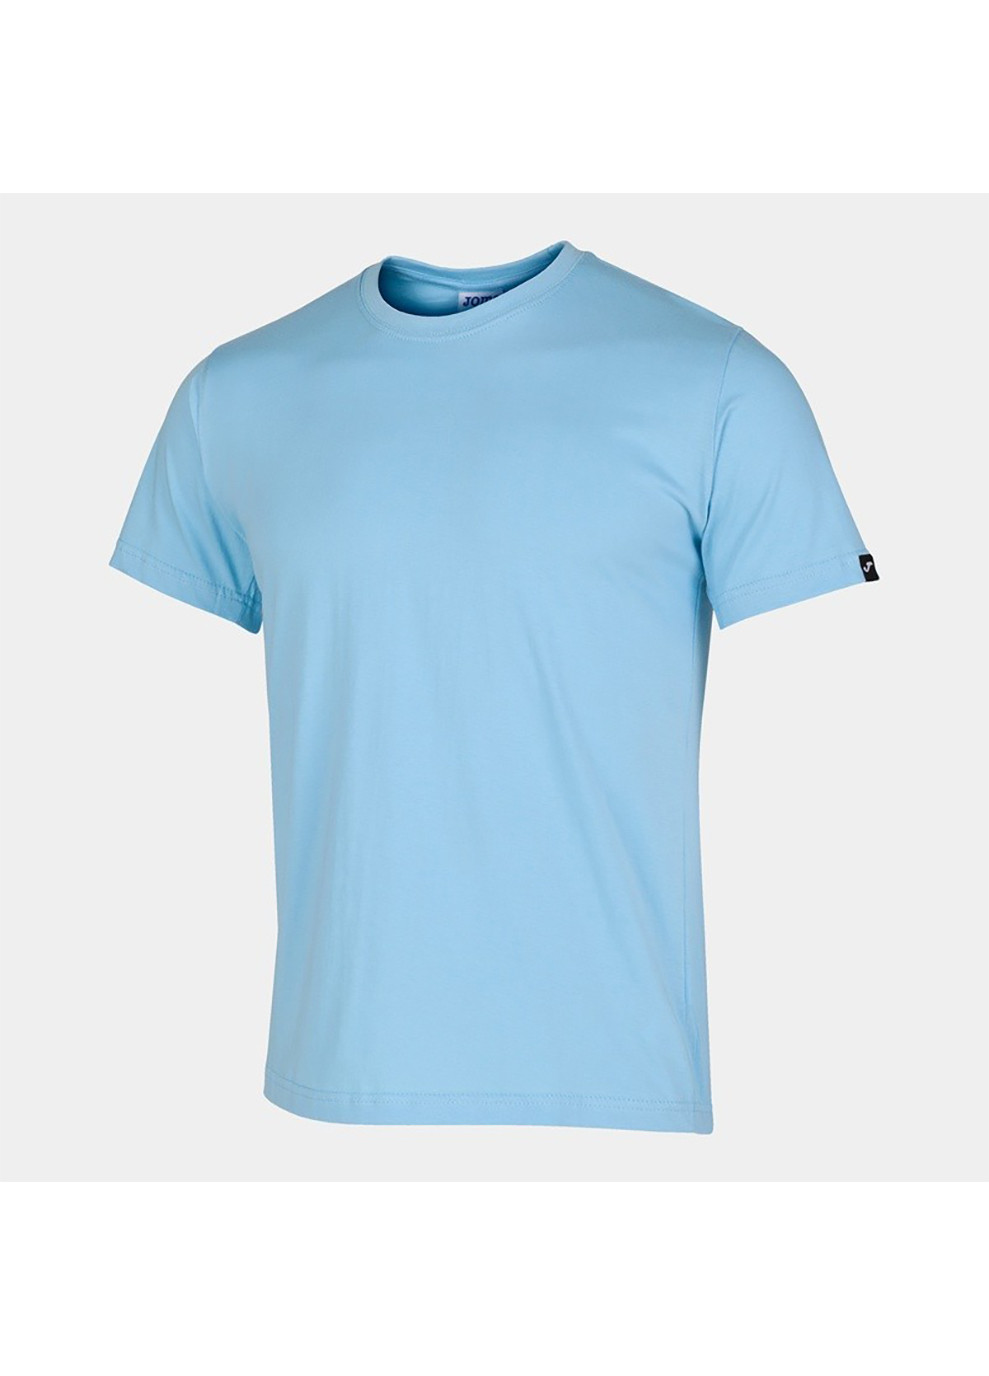 Голубая футболка camiseta manga corta desert голубой Joma